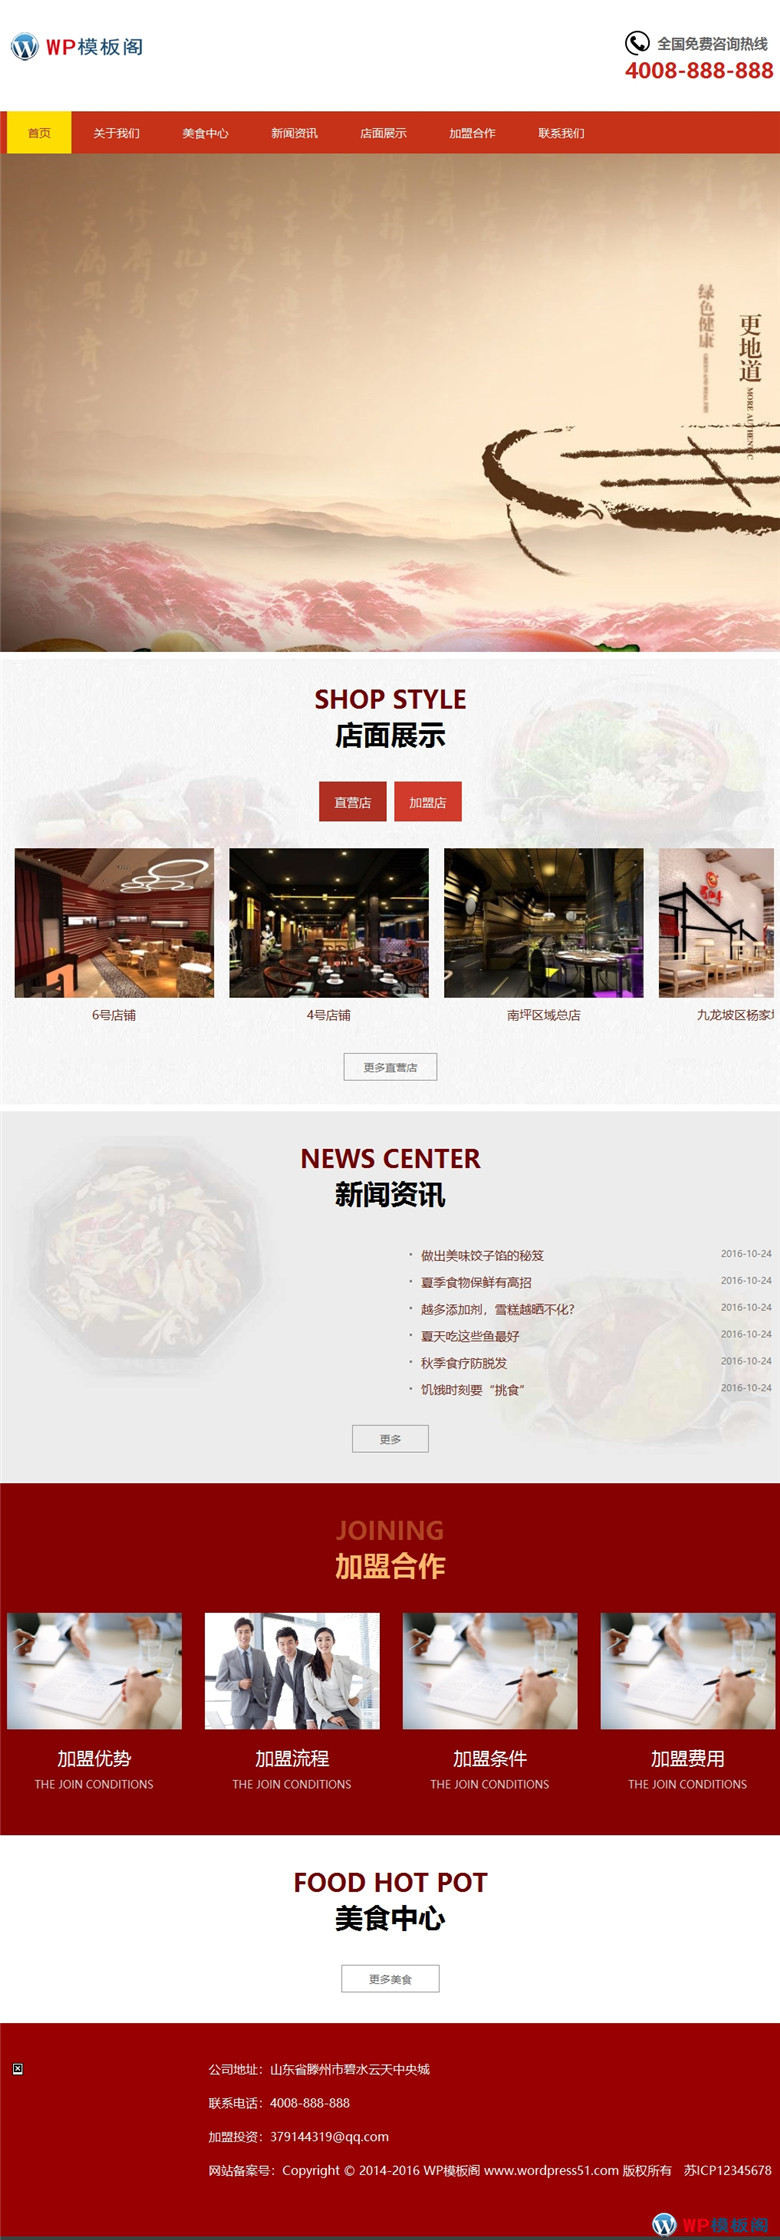 特色美食小吃加盟餐饮美食行业网站WP模板主题演示图